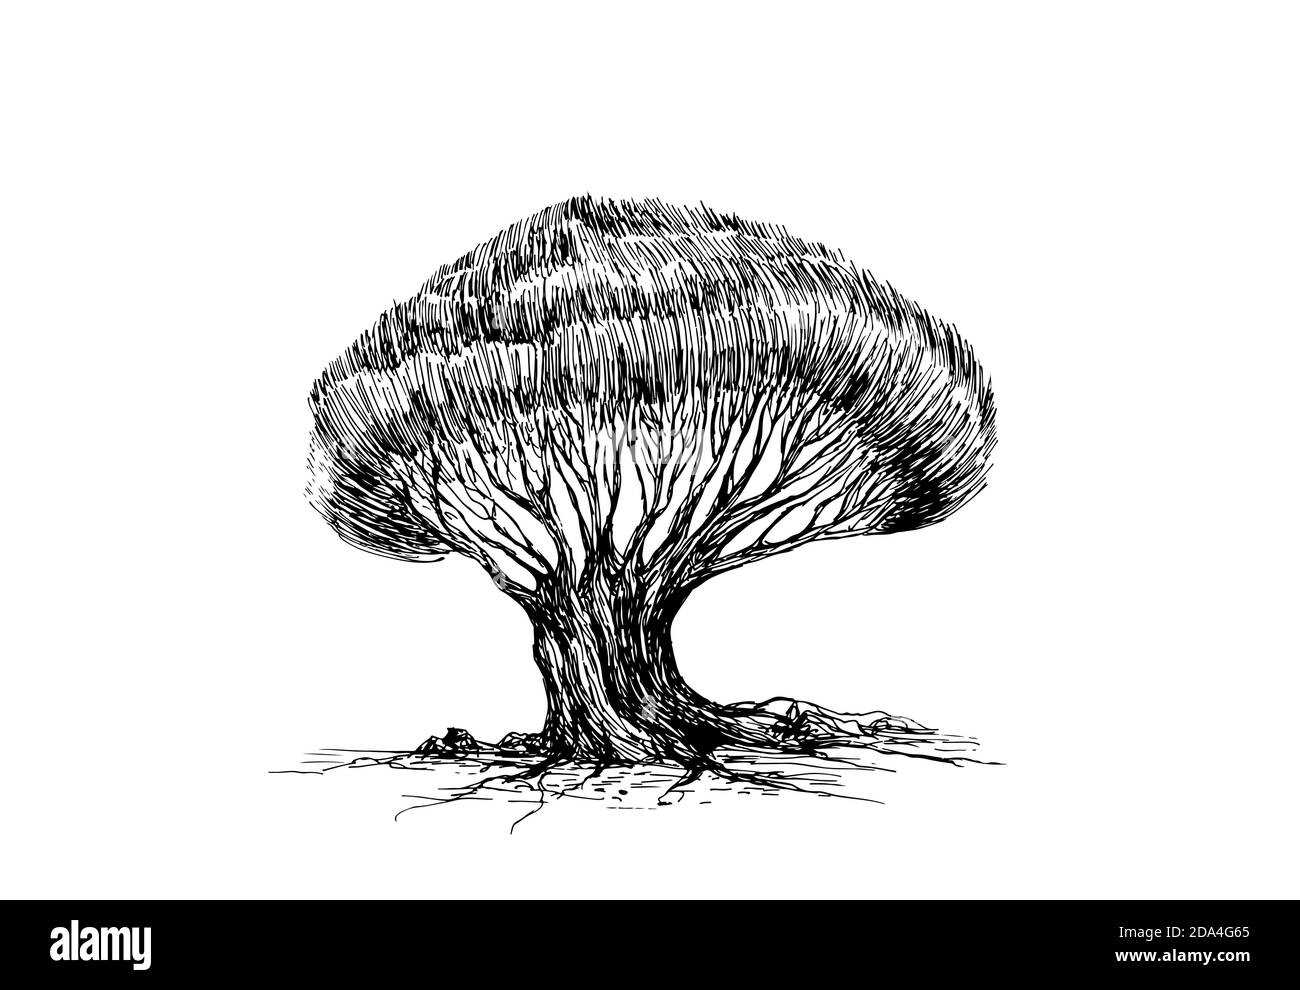 Realistische Skizze eines Baumes mit vielen Ästen und einer üppigen Krone, isoliert auf weißem Hintergrund. Stock Vektor